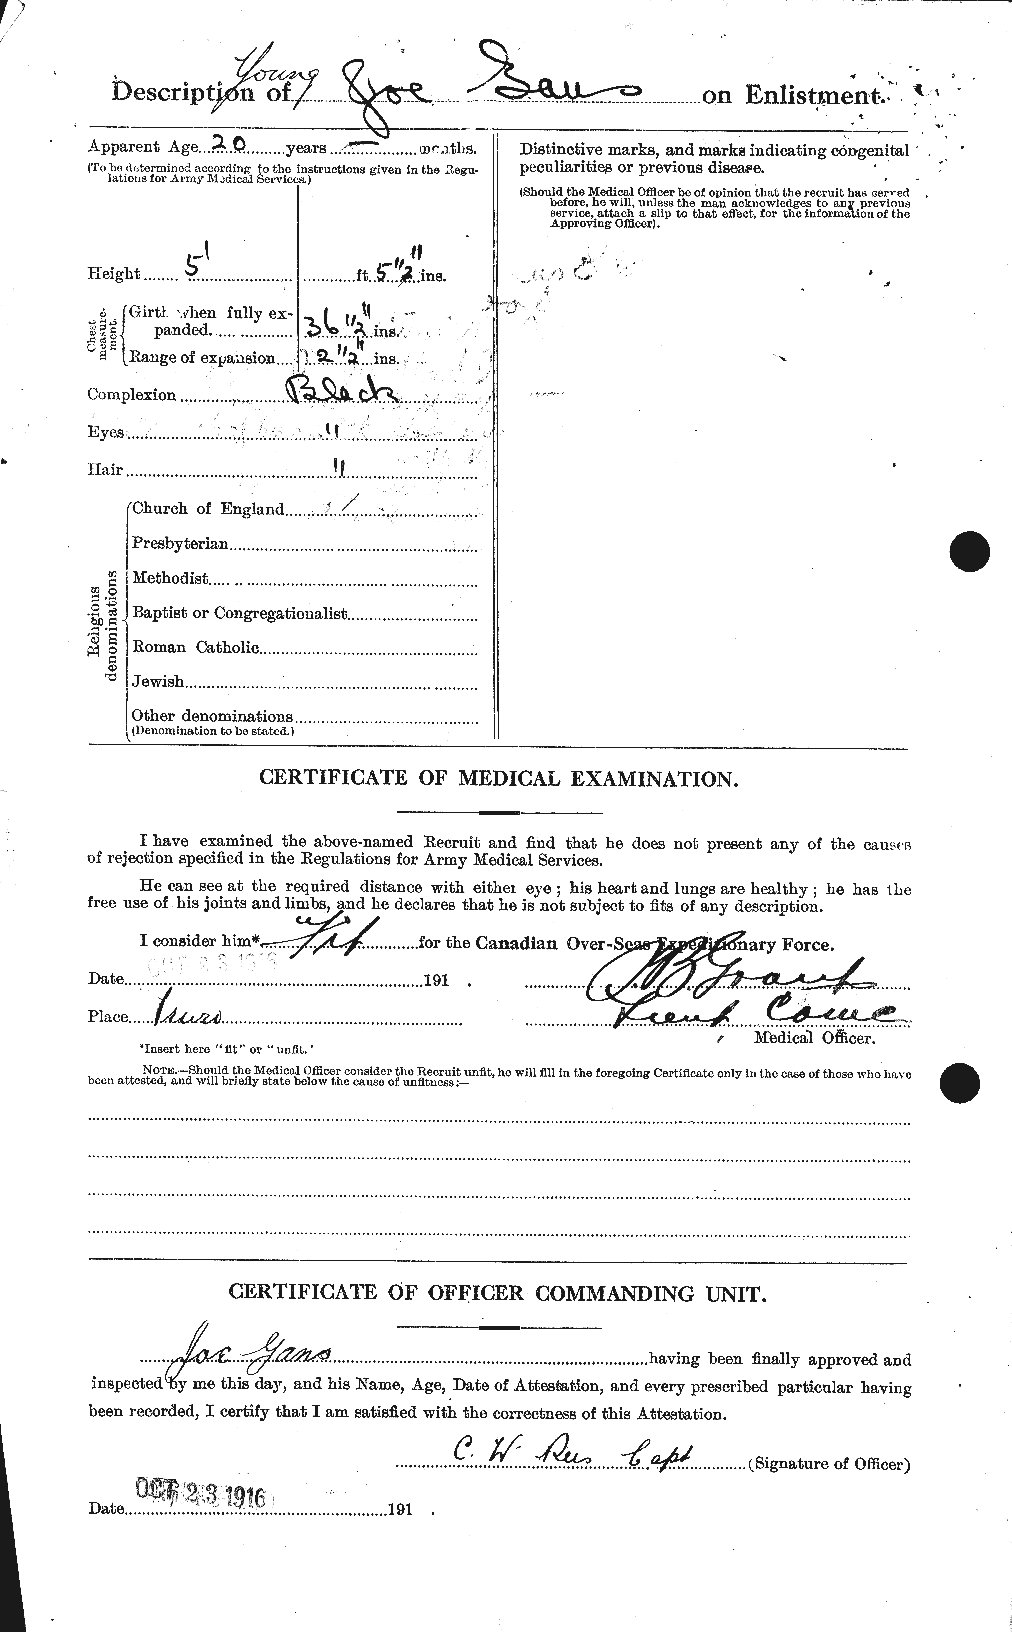 Dossiers du Personnel de la Première Guerre mondiale - CEC 343243b